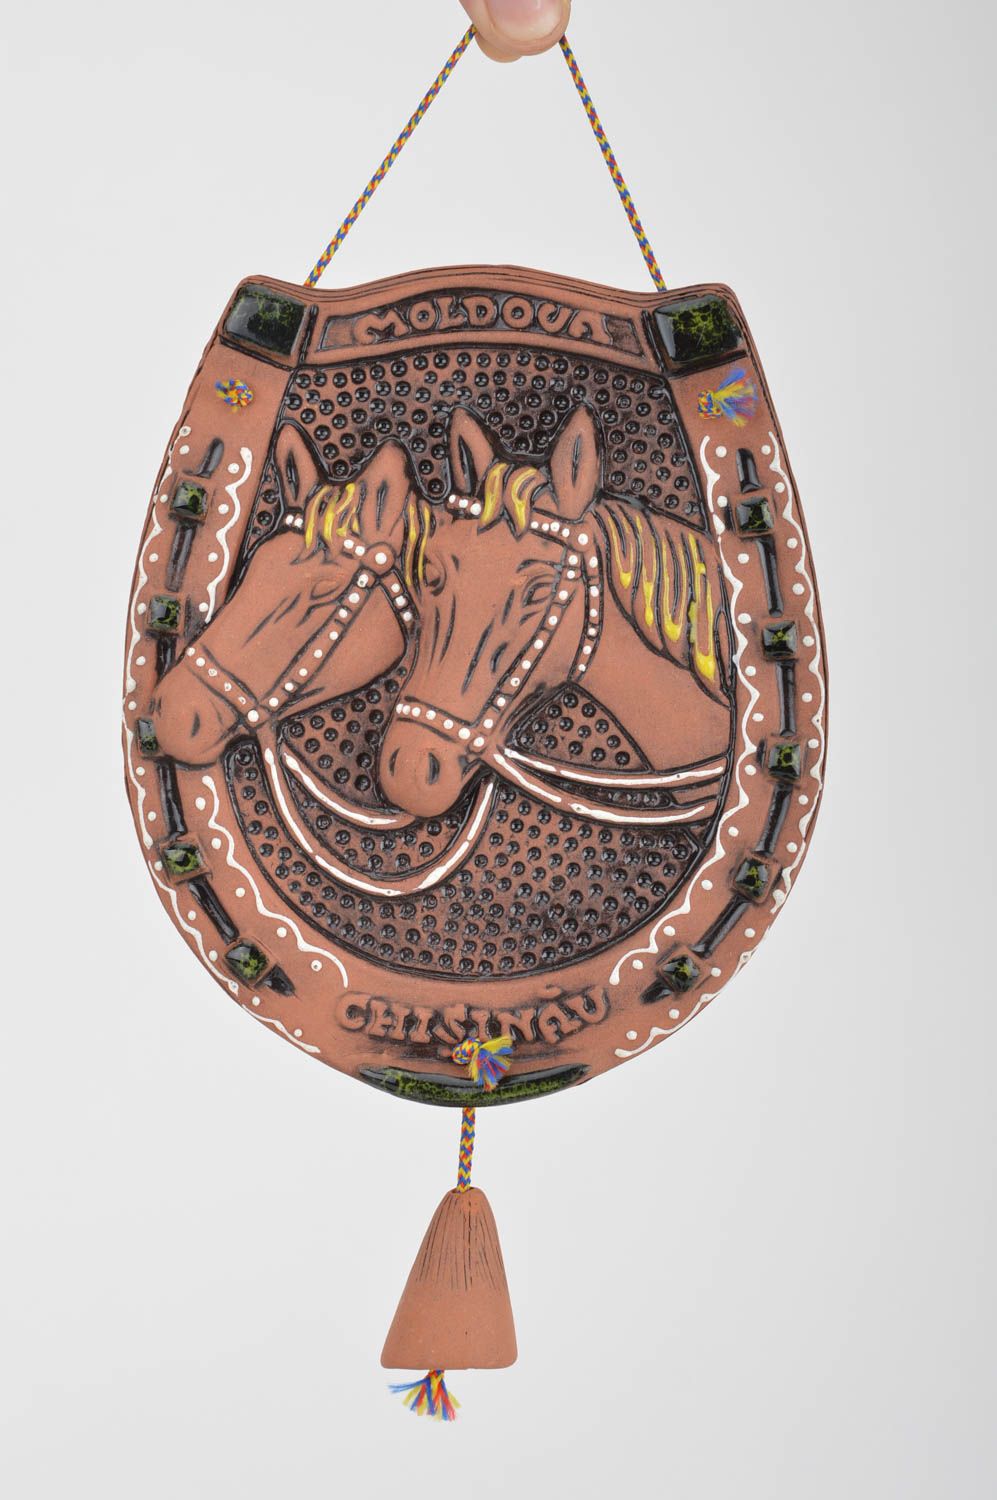 Керамическая интерьерная подвеска лошади ручной работы авторская красивая фото 3